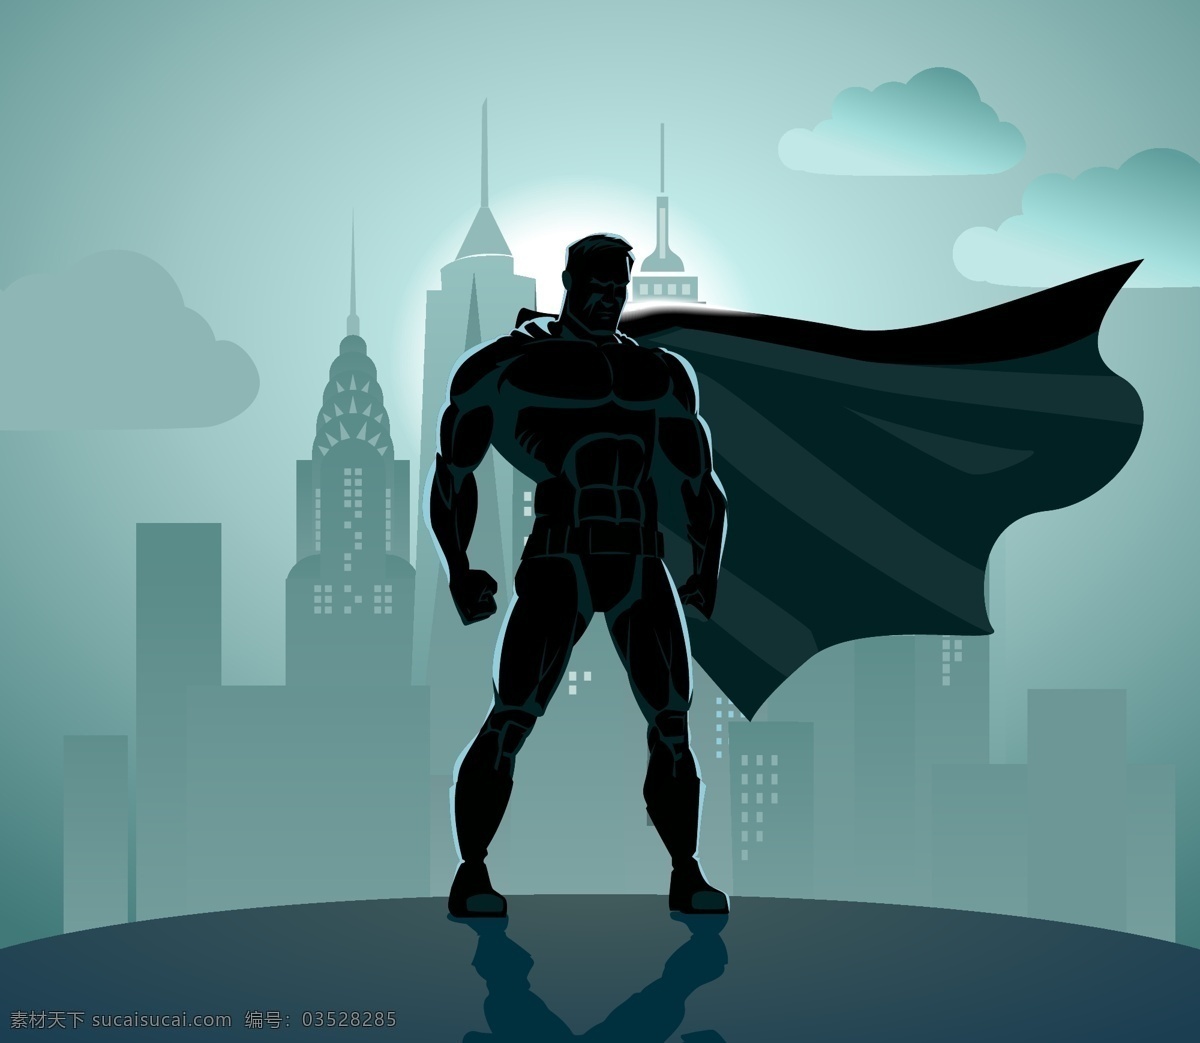 超级英雄人物 超级英雄 英雄人物 卡通超级英雄 卡通英雄人物 超人 超人矢量 共享设计矢量 人物图库